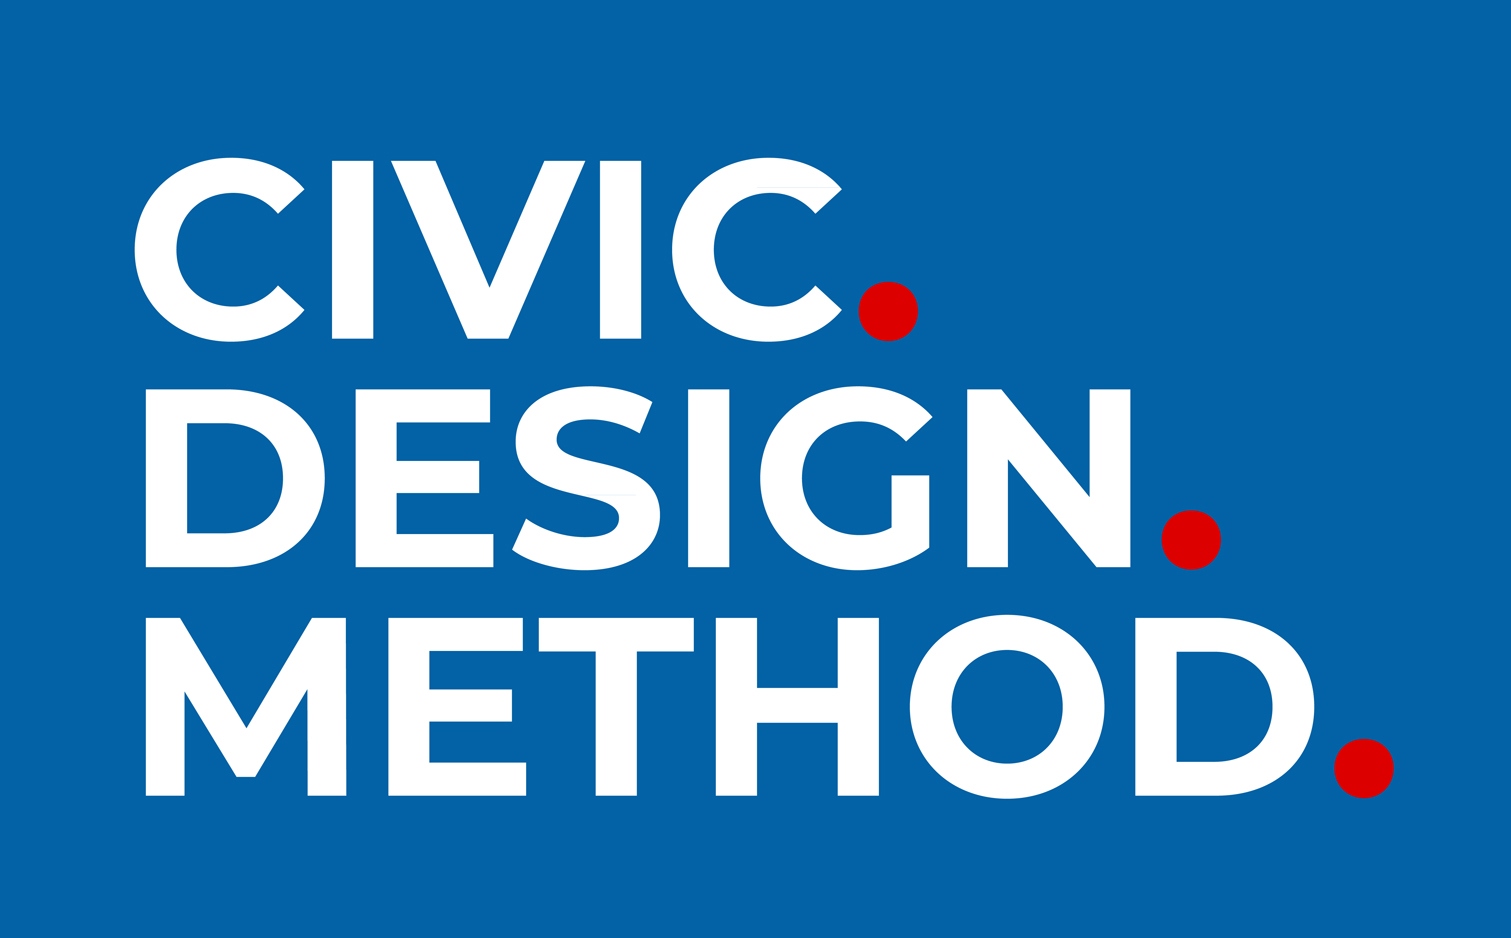 Os presento el Civic Design Method